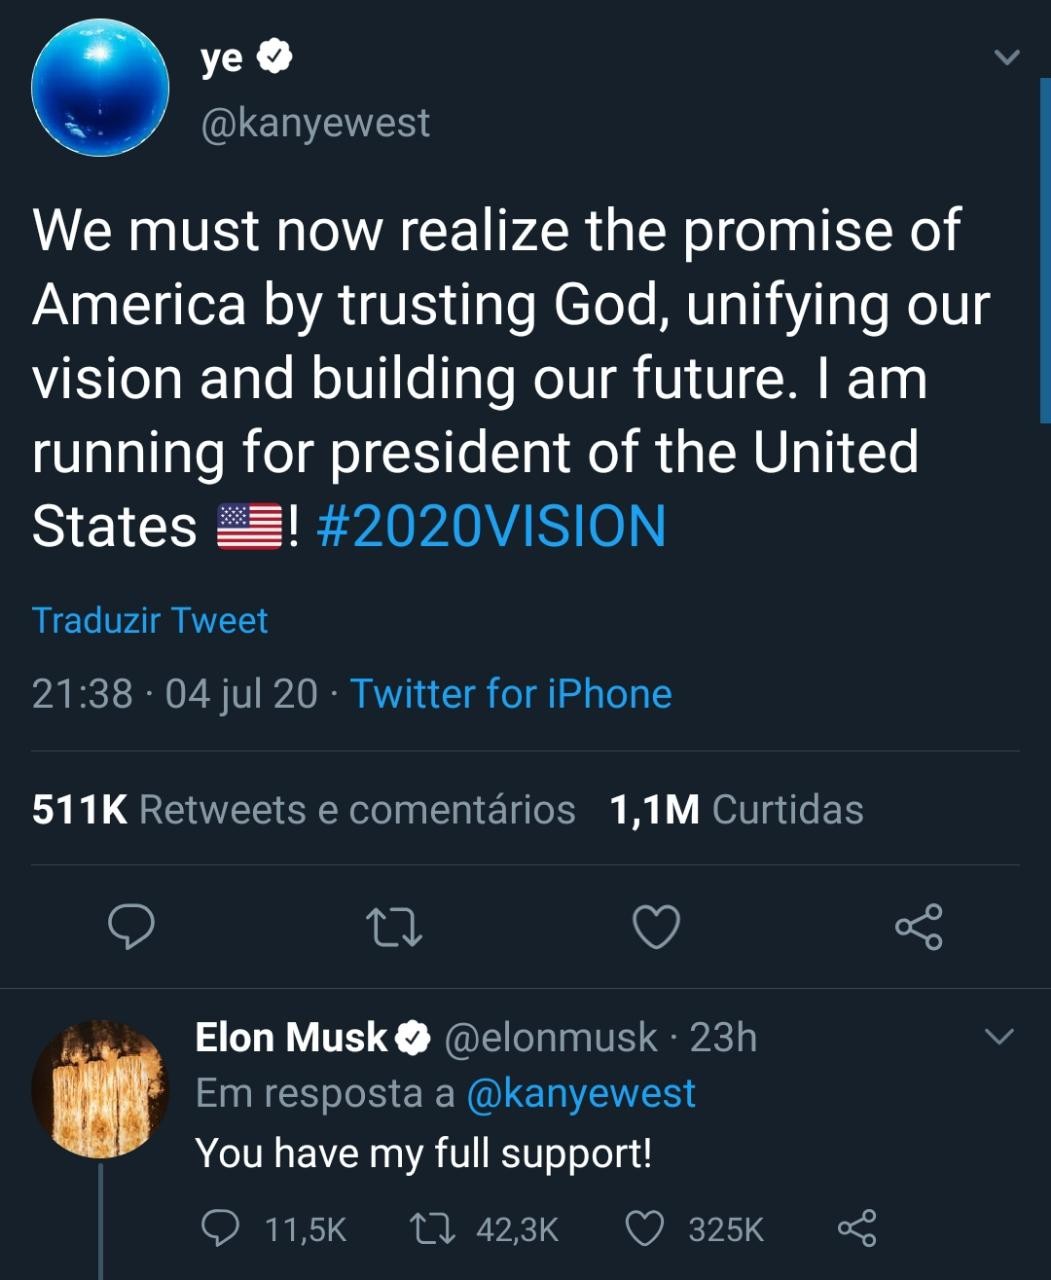 Tweet de Kanye West e a resposta, em apoio, de Elon Musk (Foto: Reprodução/Twitter)